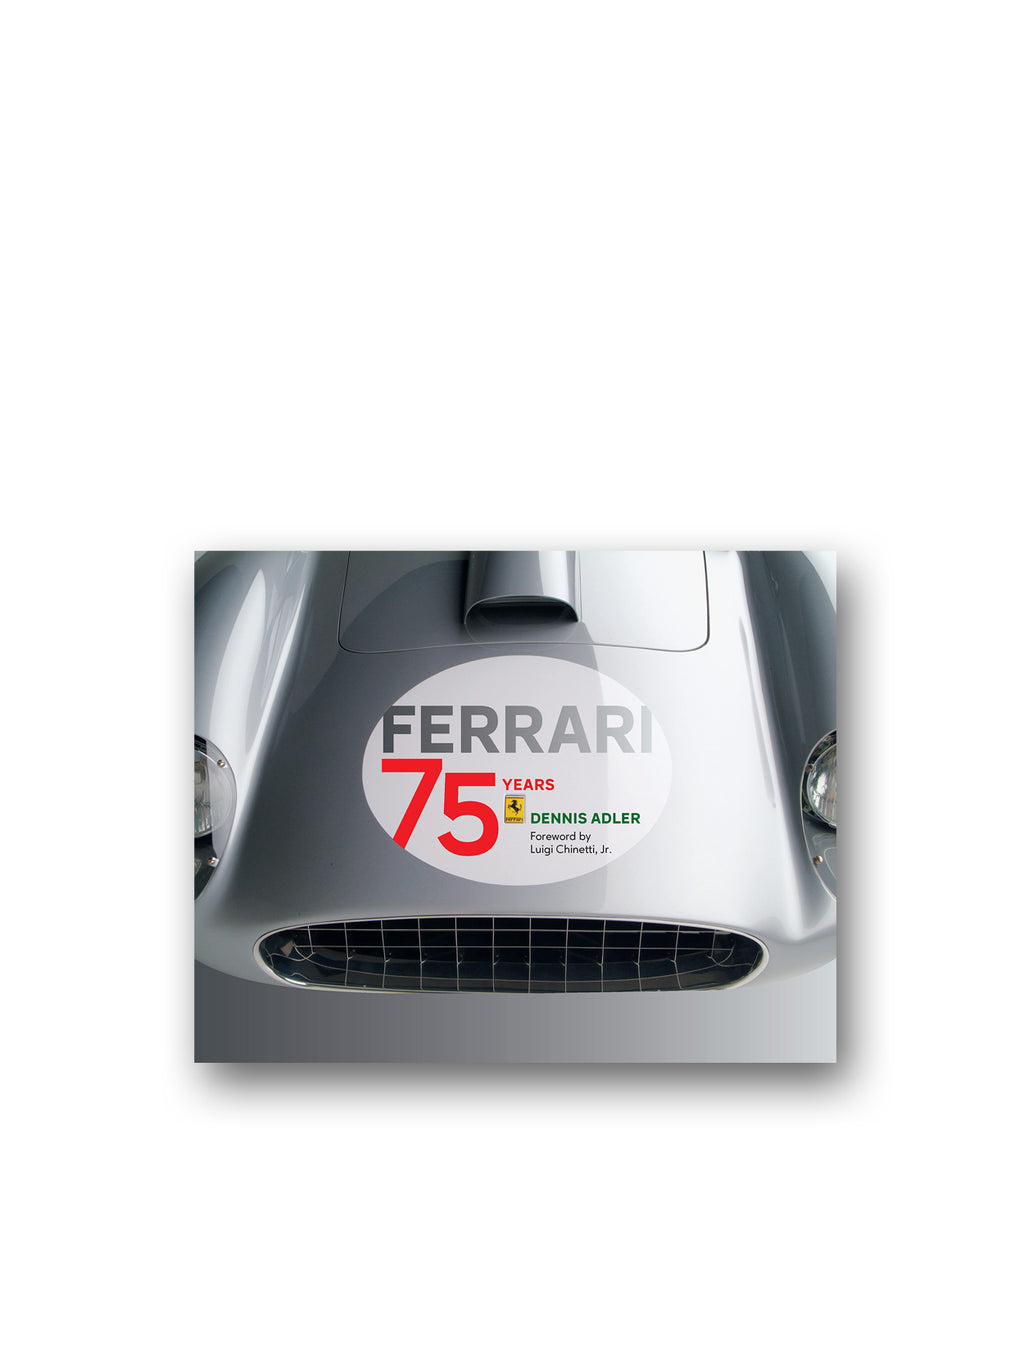 Ferrari : 75 Years